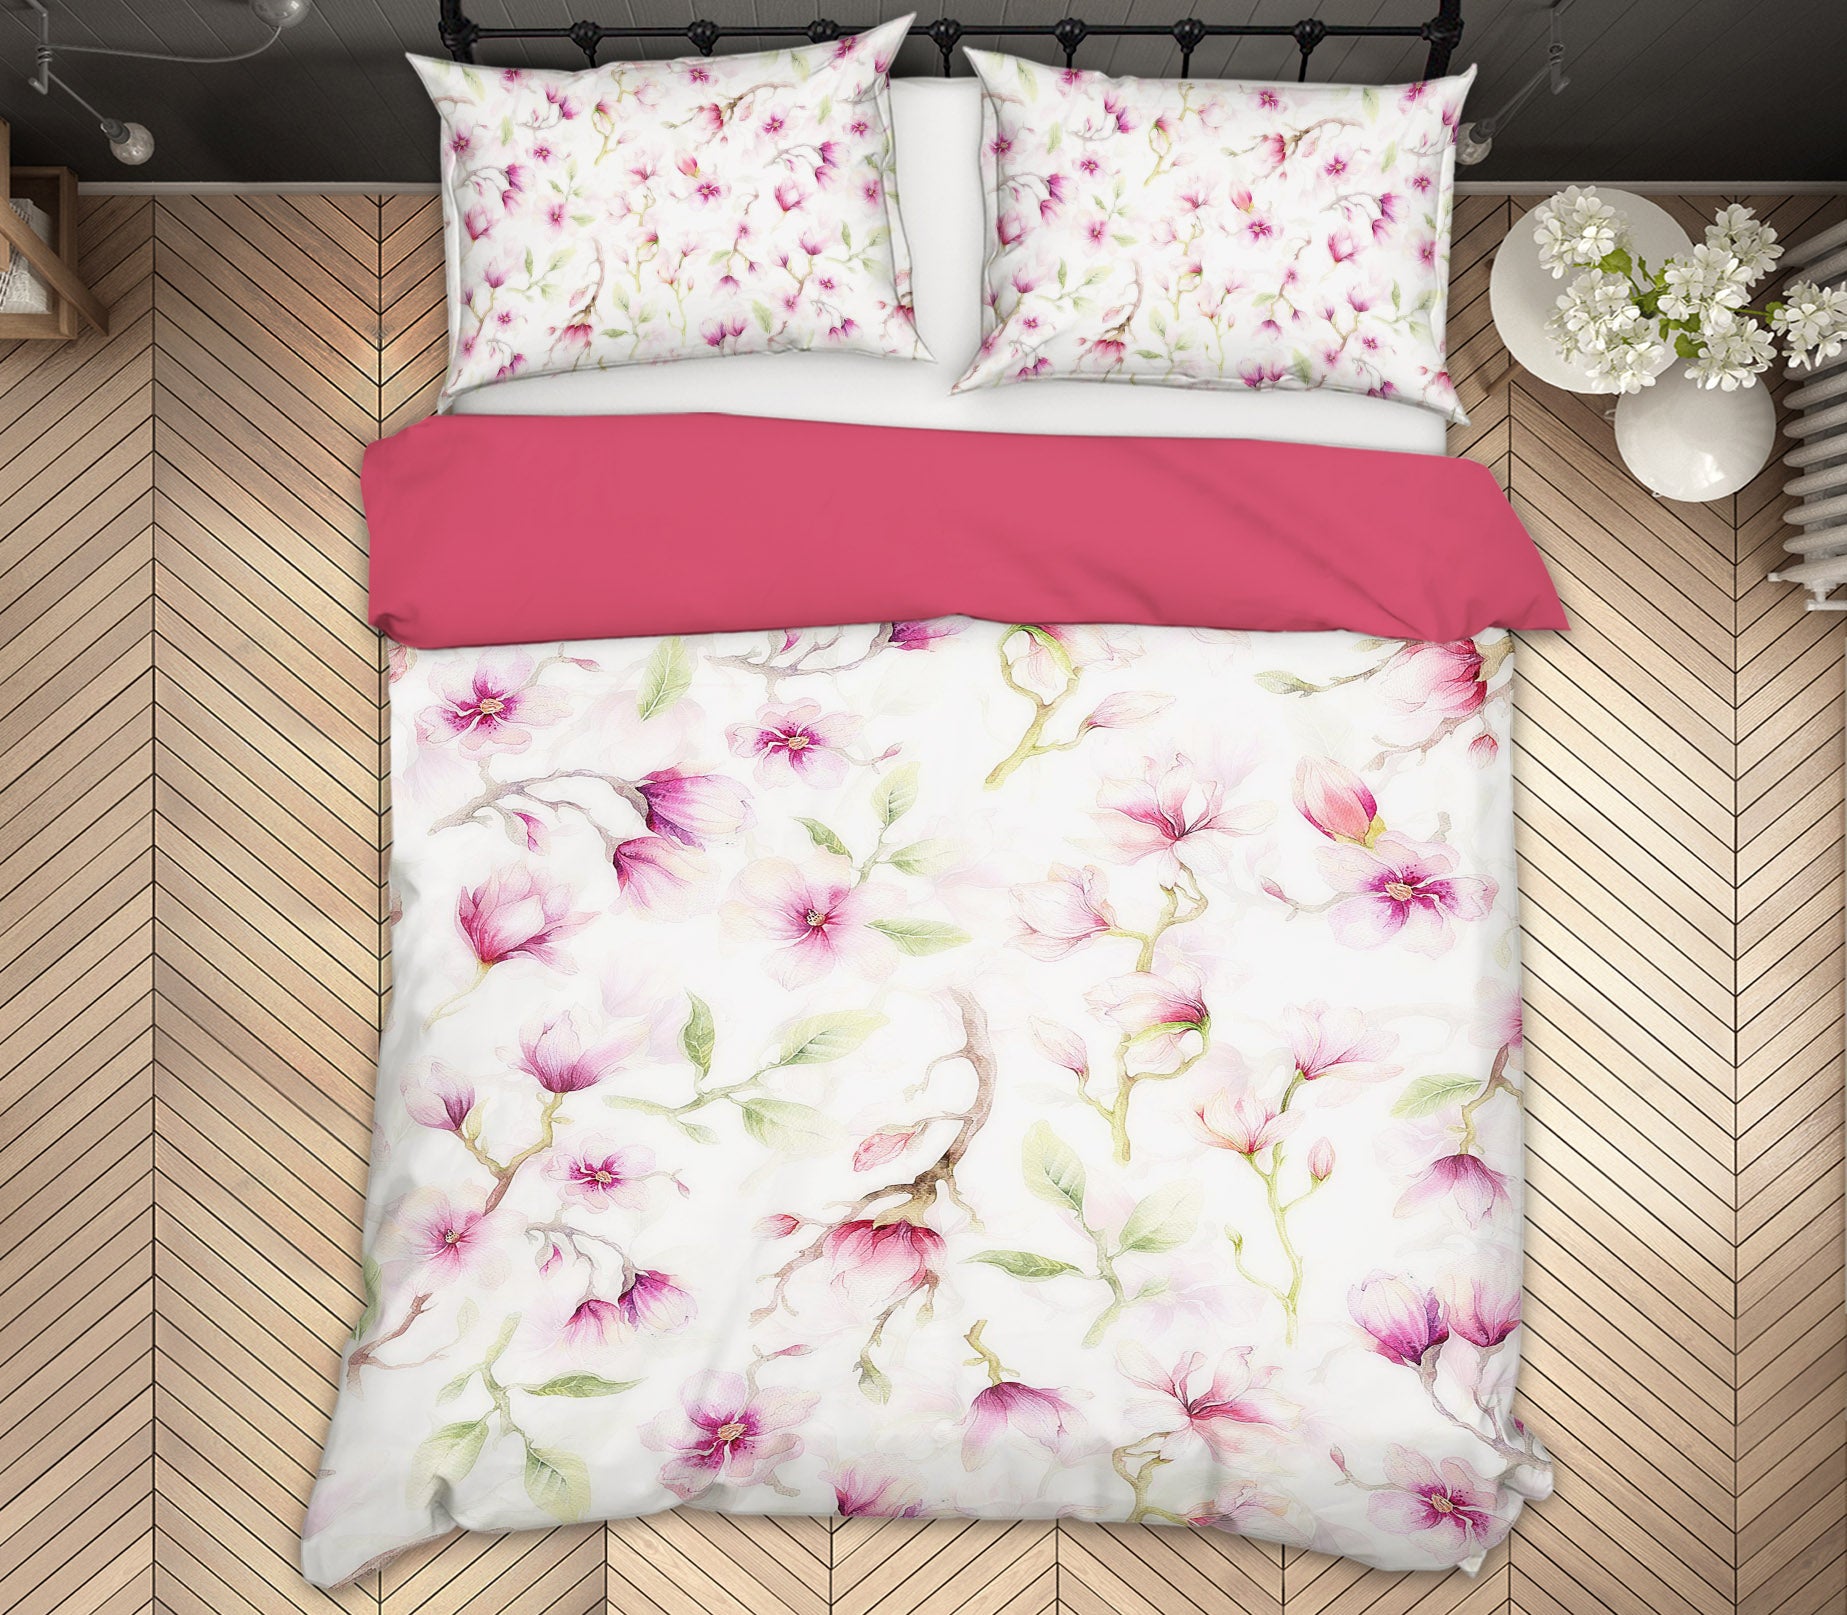 3D Flower Pattern 18199 Uta Naumann Bedding Bed Pillowcases Quilt